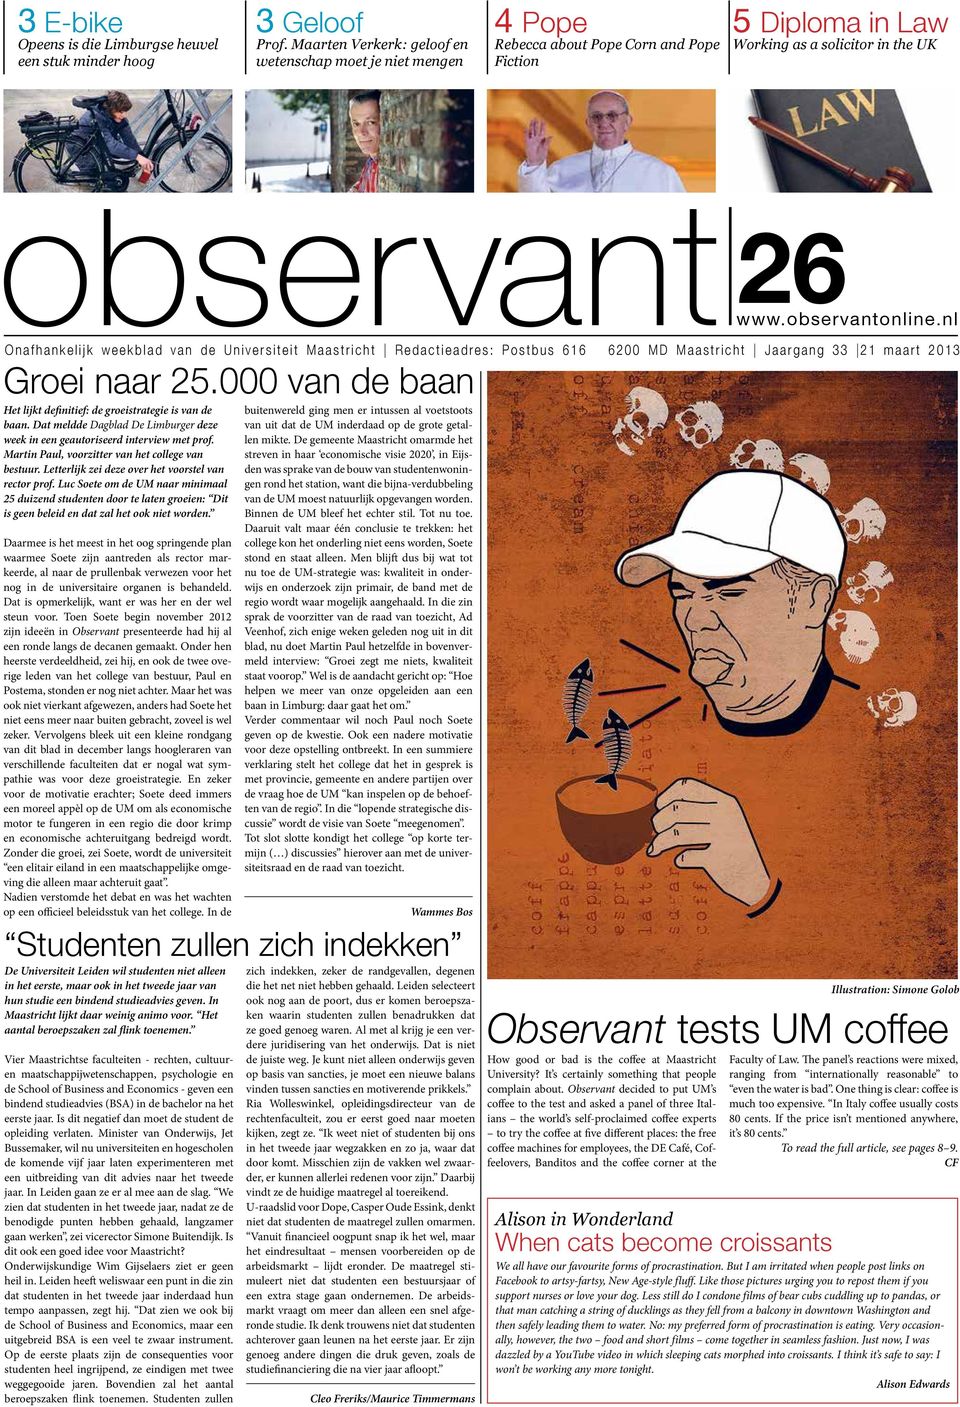 nl Onafhankelijk weekblad van de Universiteit Maastricht Redactieadres: Postbus 616 6200 MD Maastricht Jaargang 33 21 maart 2013 Groei naar 25.